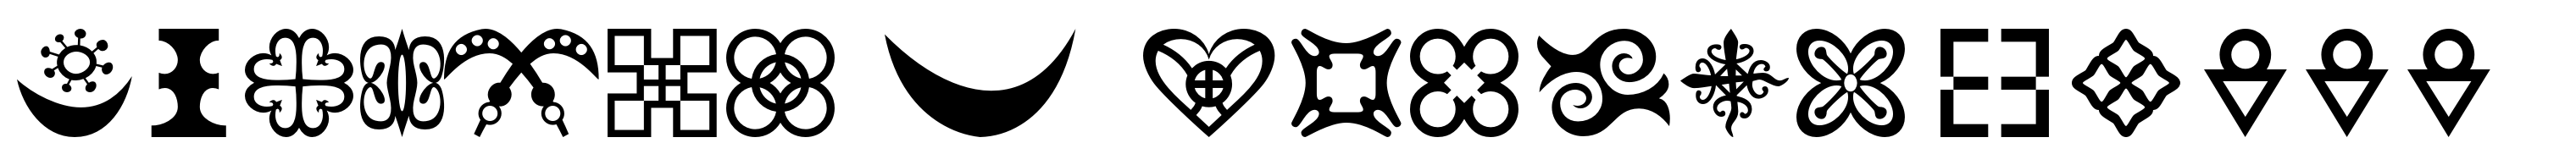 Adinkra Symbols Regular